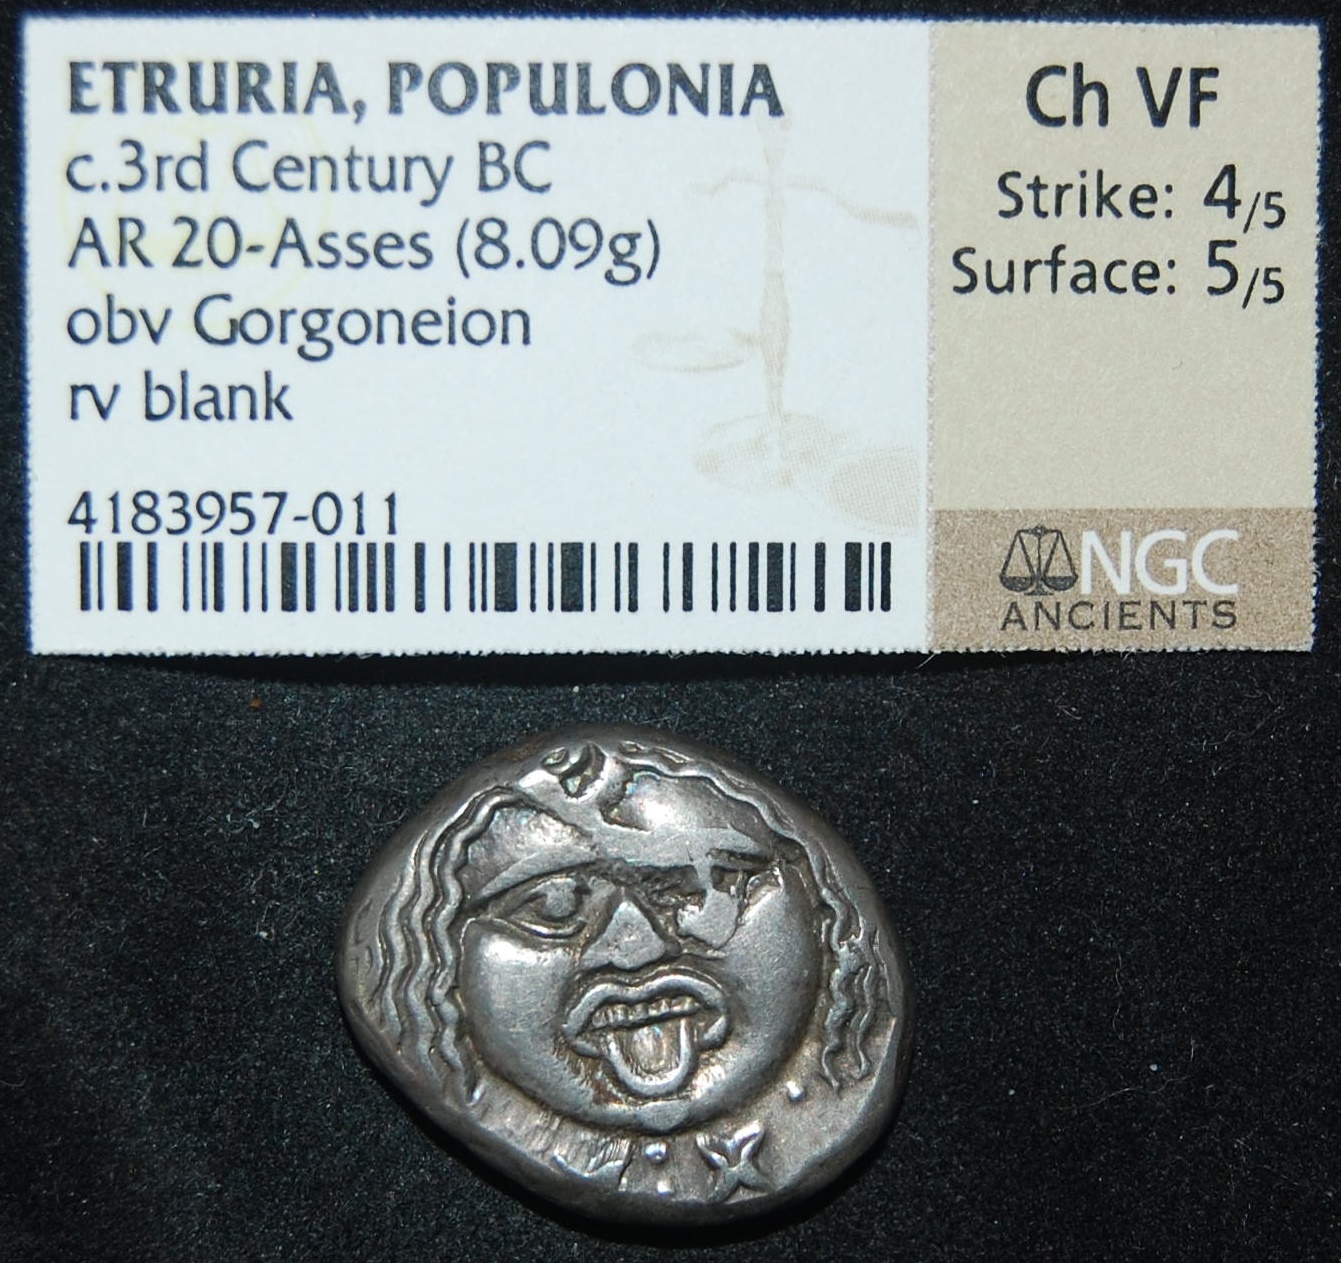 Etruria Populonia 3rd C BCE AR 20 As 8.1g Metus Blank NGC Cert HN 152 Obv.JPG